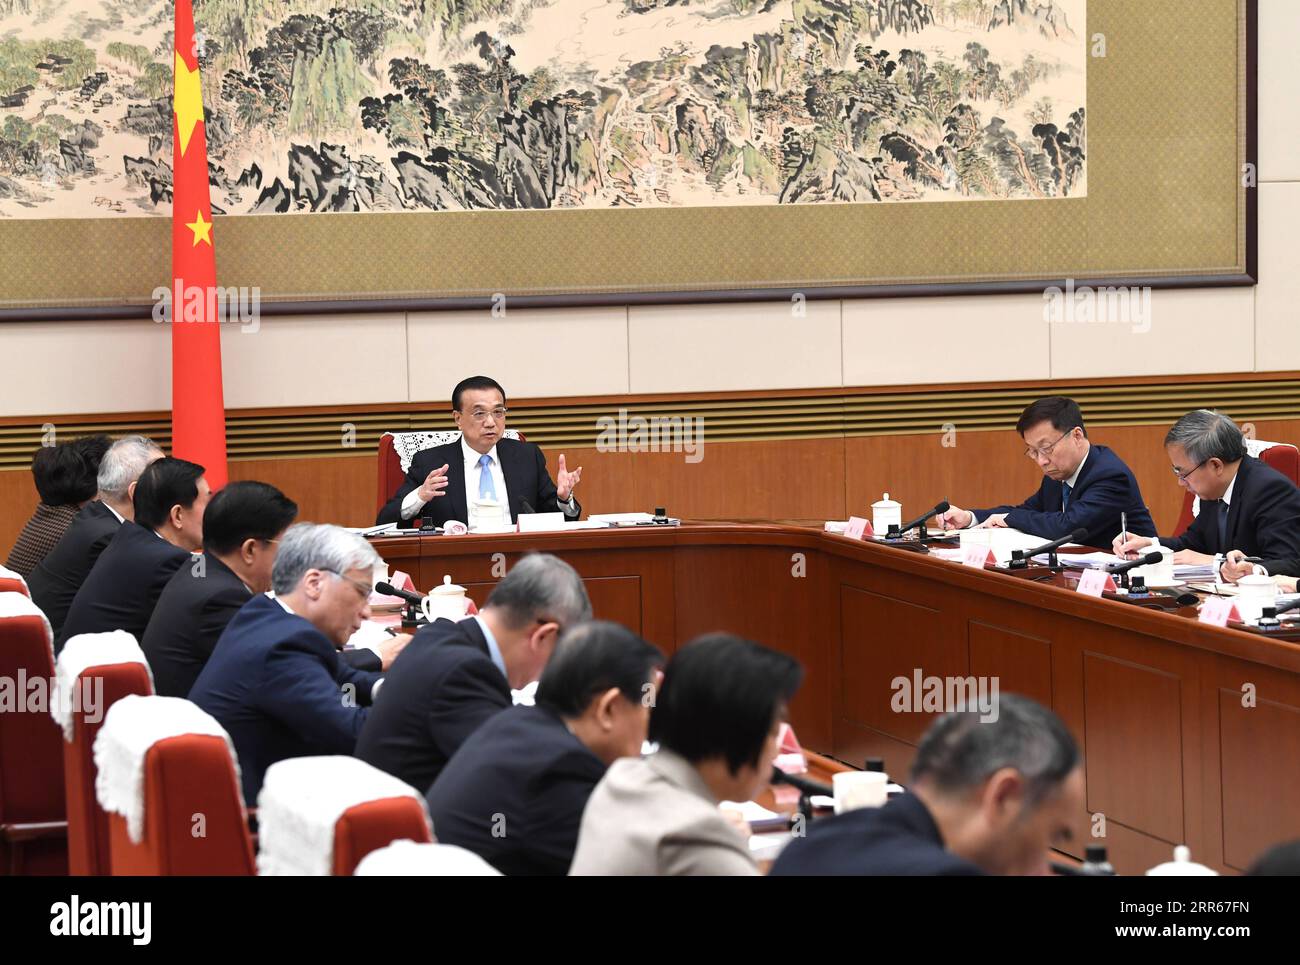 210129 -- PEKING, 29. Januar 2021 -- der chinesische Ministerpräsident Li Keqiang, ebenfalls Mitglied des Ständigen Ausschusses des Politischen Büros des Zentralkomitees der Kommunistischen Partei Chinas (KPCh), führt den Vorsitz über ein Symposium zur Einholung von Stellungnahmen zu einem Entwurf des Regierungsarbeitsberichts, sowie den Entwurf des 14. Fünfjahresplans und die langfristigen Ziele bis zum Jahr 2035 am 29. Januar 2021. Auf dem Symposium hörte Li Vorschläge zu den beiden Dokumenten von nicht-kommunistischen Parteien, der All-China Federation of Industry and Commerce, sowie von Personen ohne Parteizugehörigkeit. Vize-Premier Han Zheng, ebenfalls ein Stockfoto